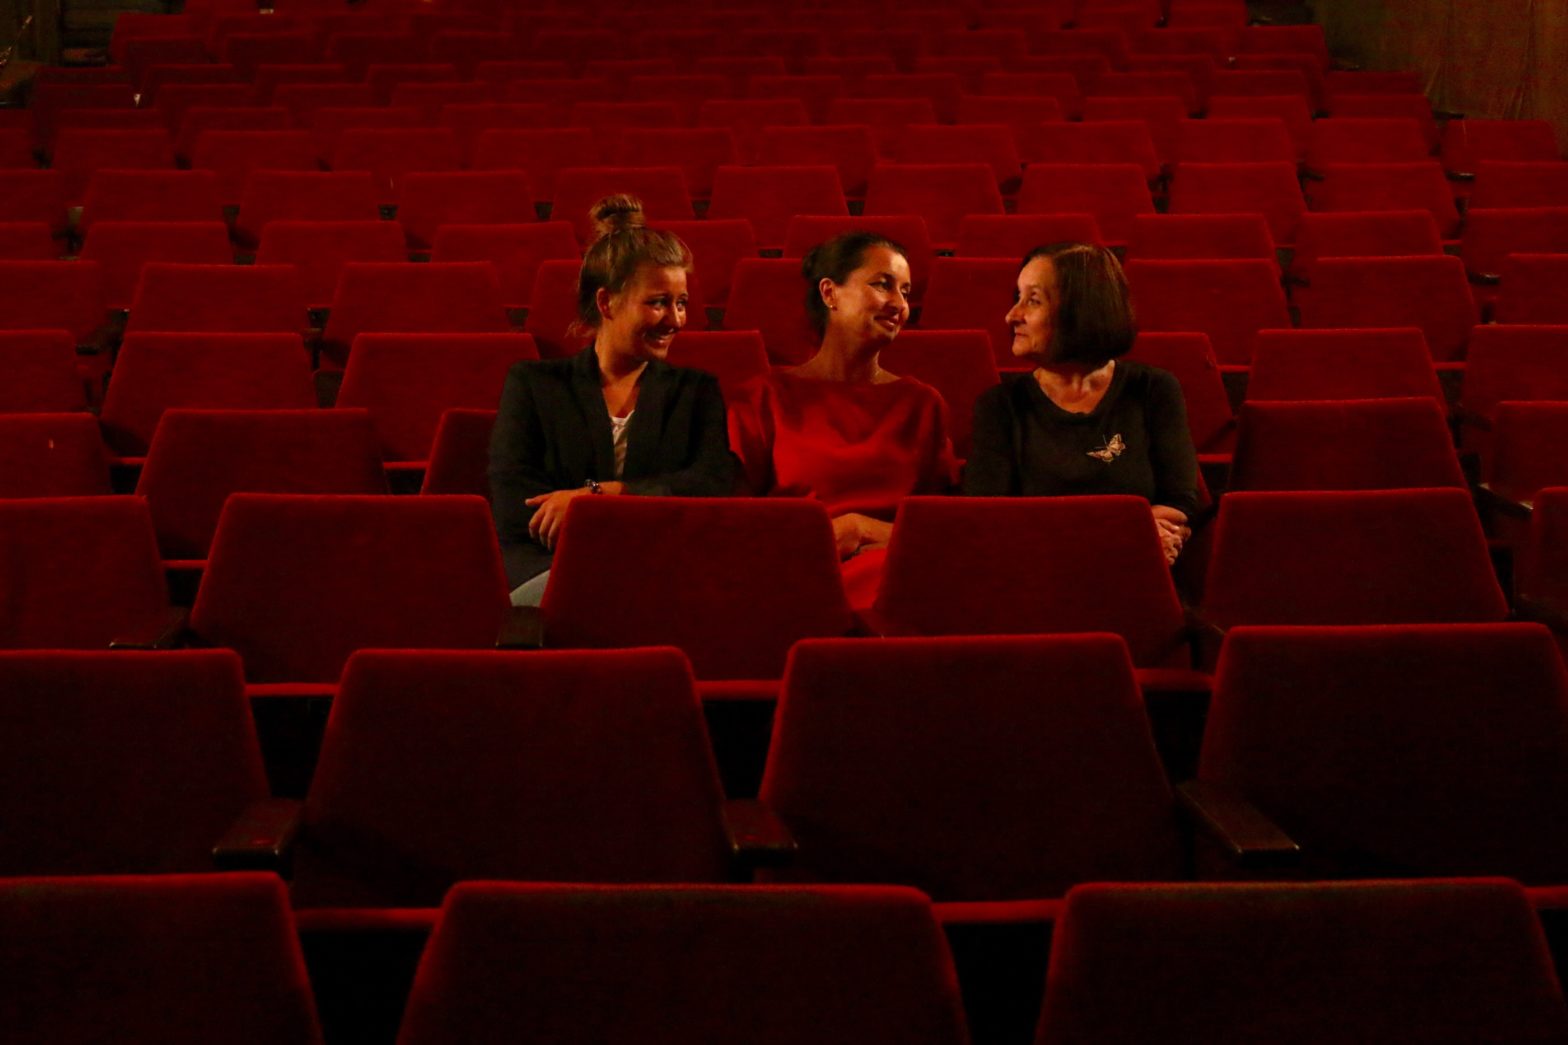 Trzy kobiety rozmawiają w pustej sali kinowej.